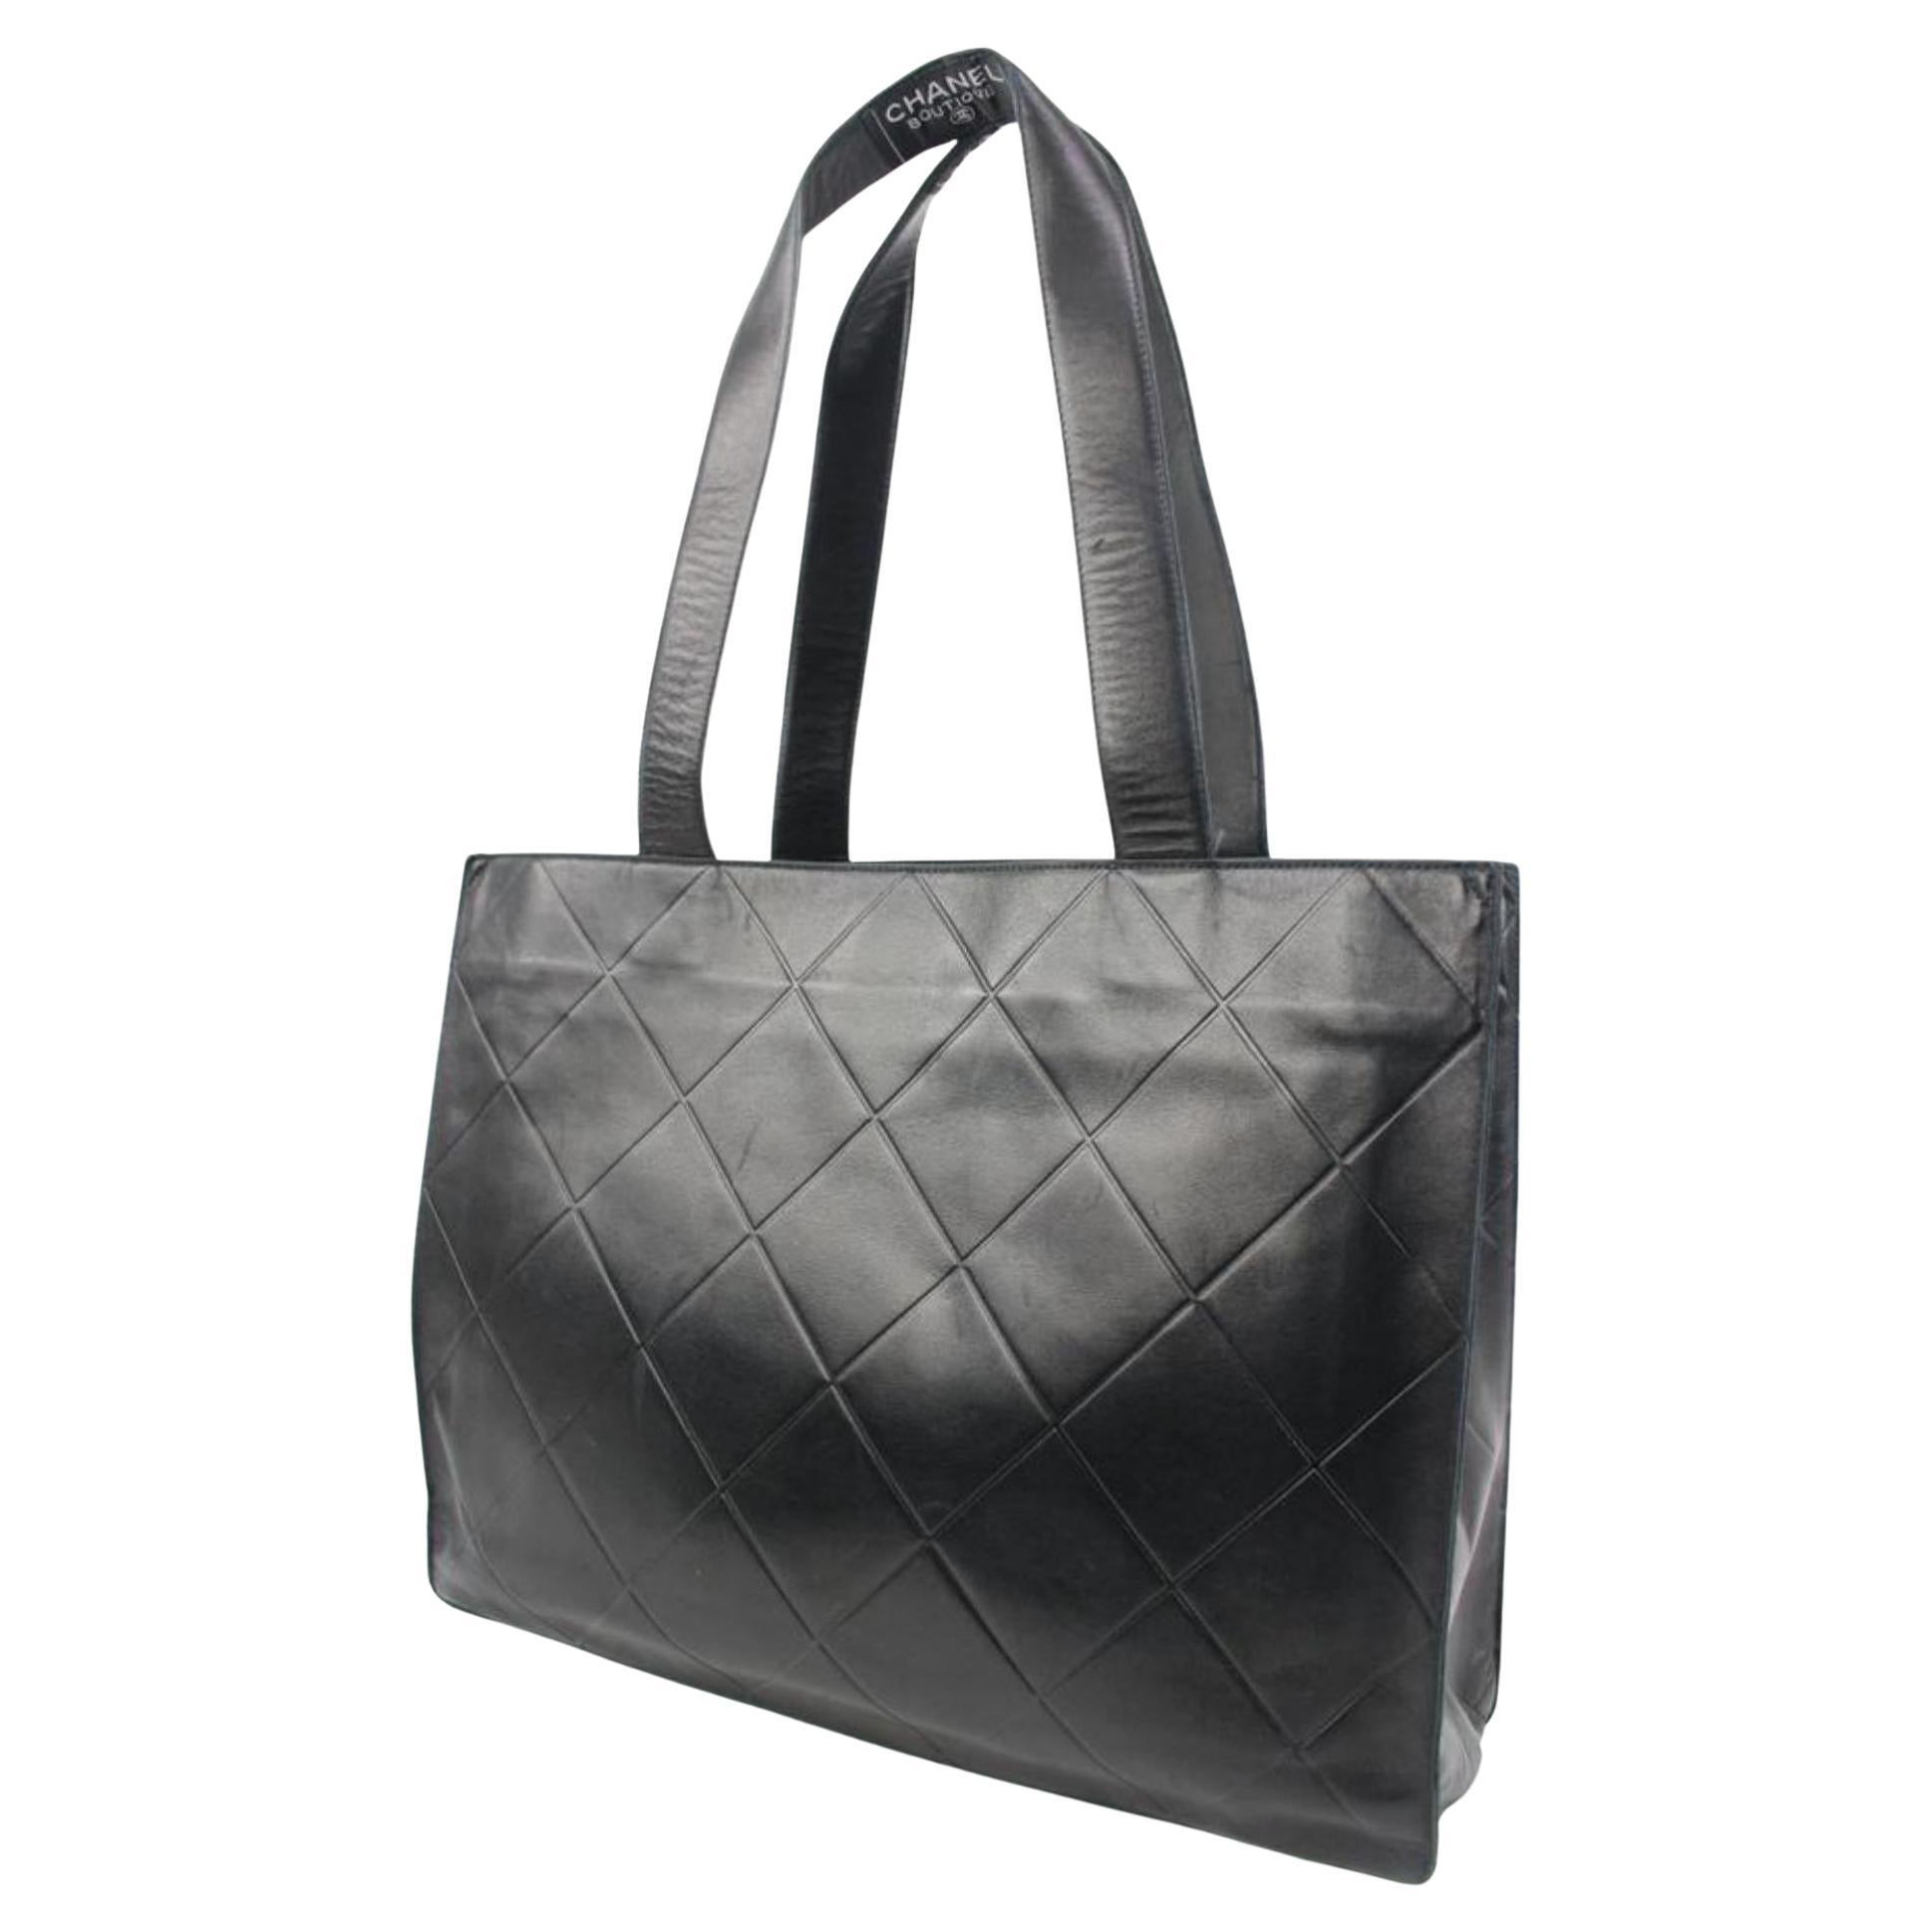 Chanel Large Shoulder Bag - 425 For Sale on 1stDibs